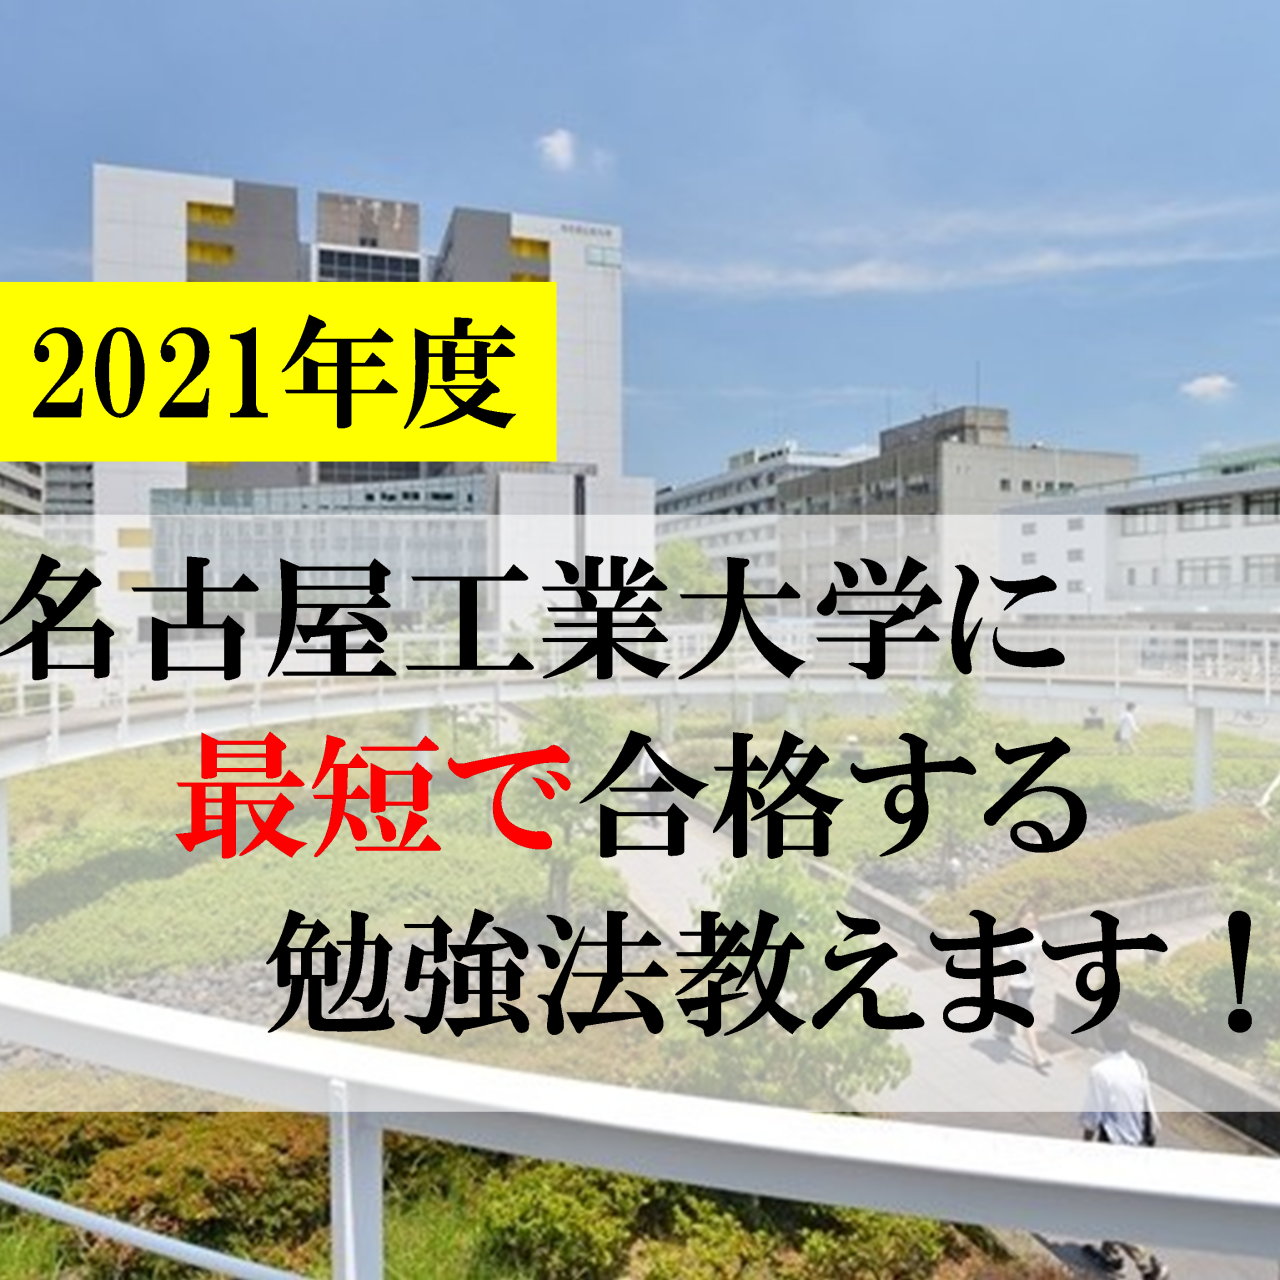 【岡崎の受験生必見】名古屋工業大学に最短で合格する勉強法教えます